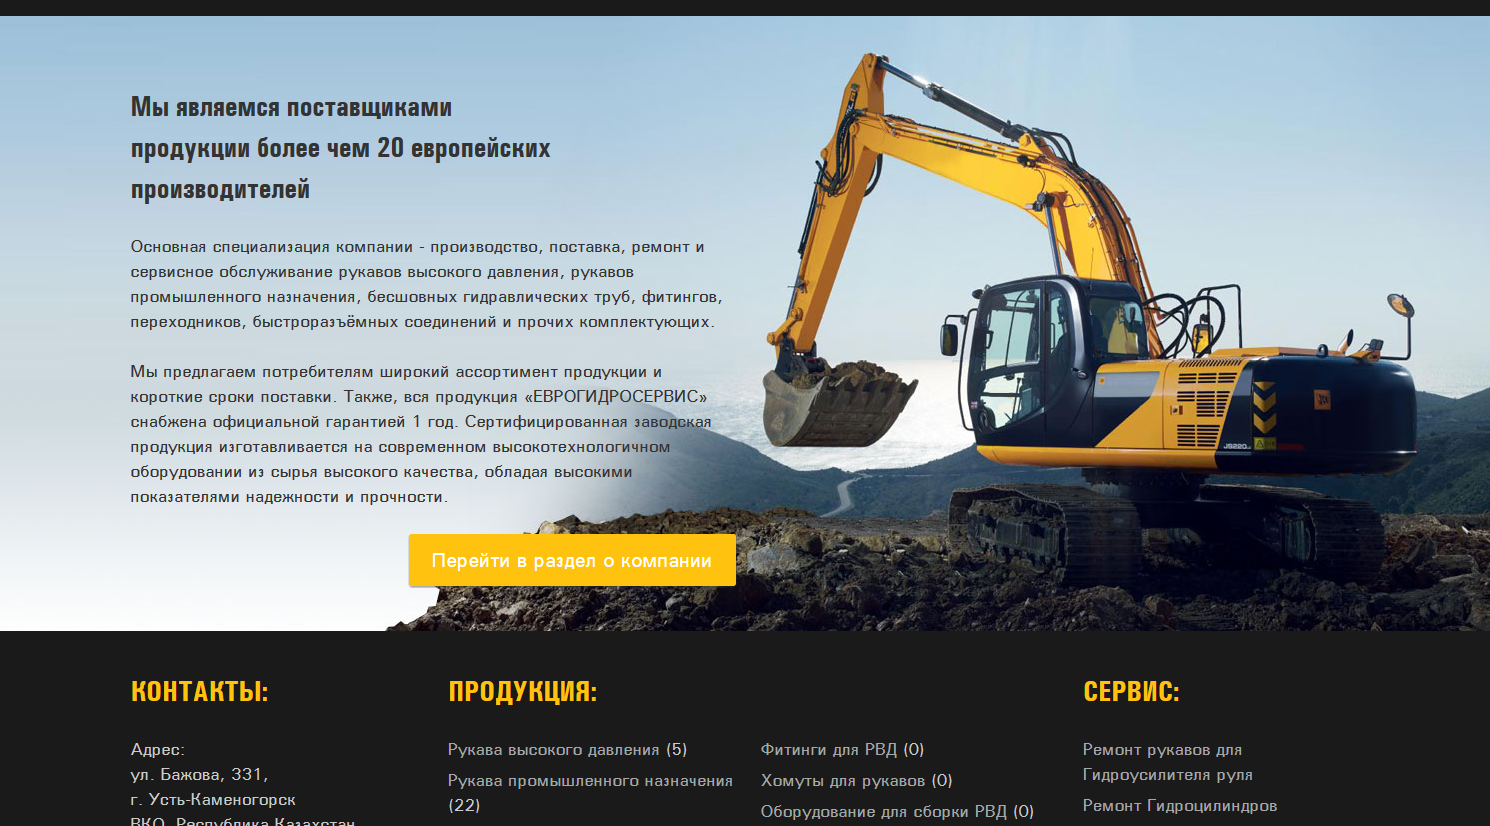 официальный сайт тоо «еврогидросервис» казахстан